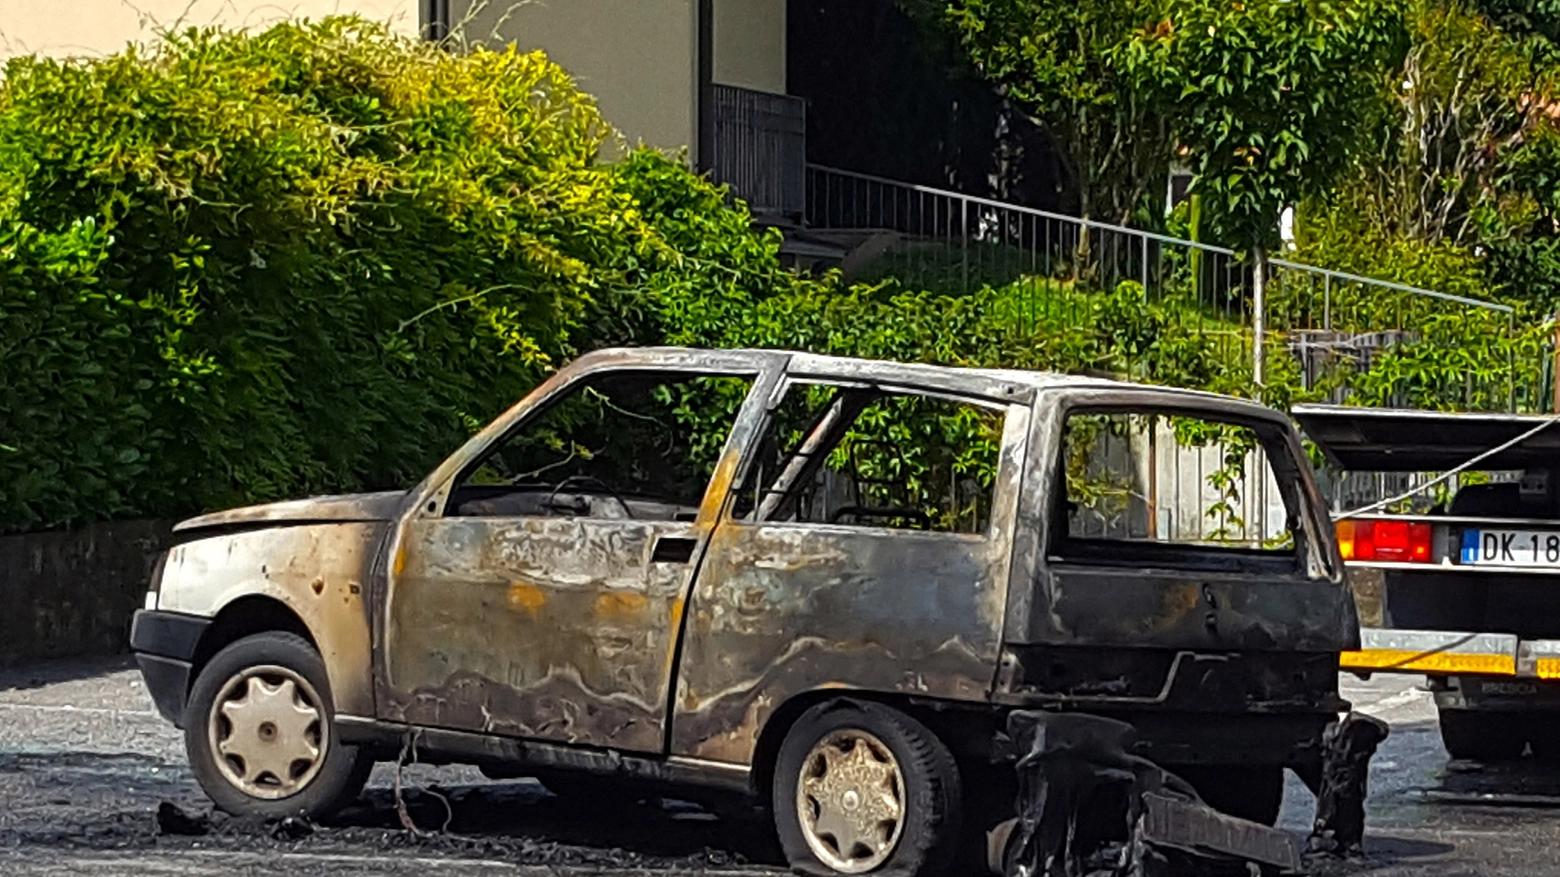 L'auto usata dai rapinatori incendiata dopo la fuga